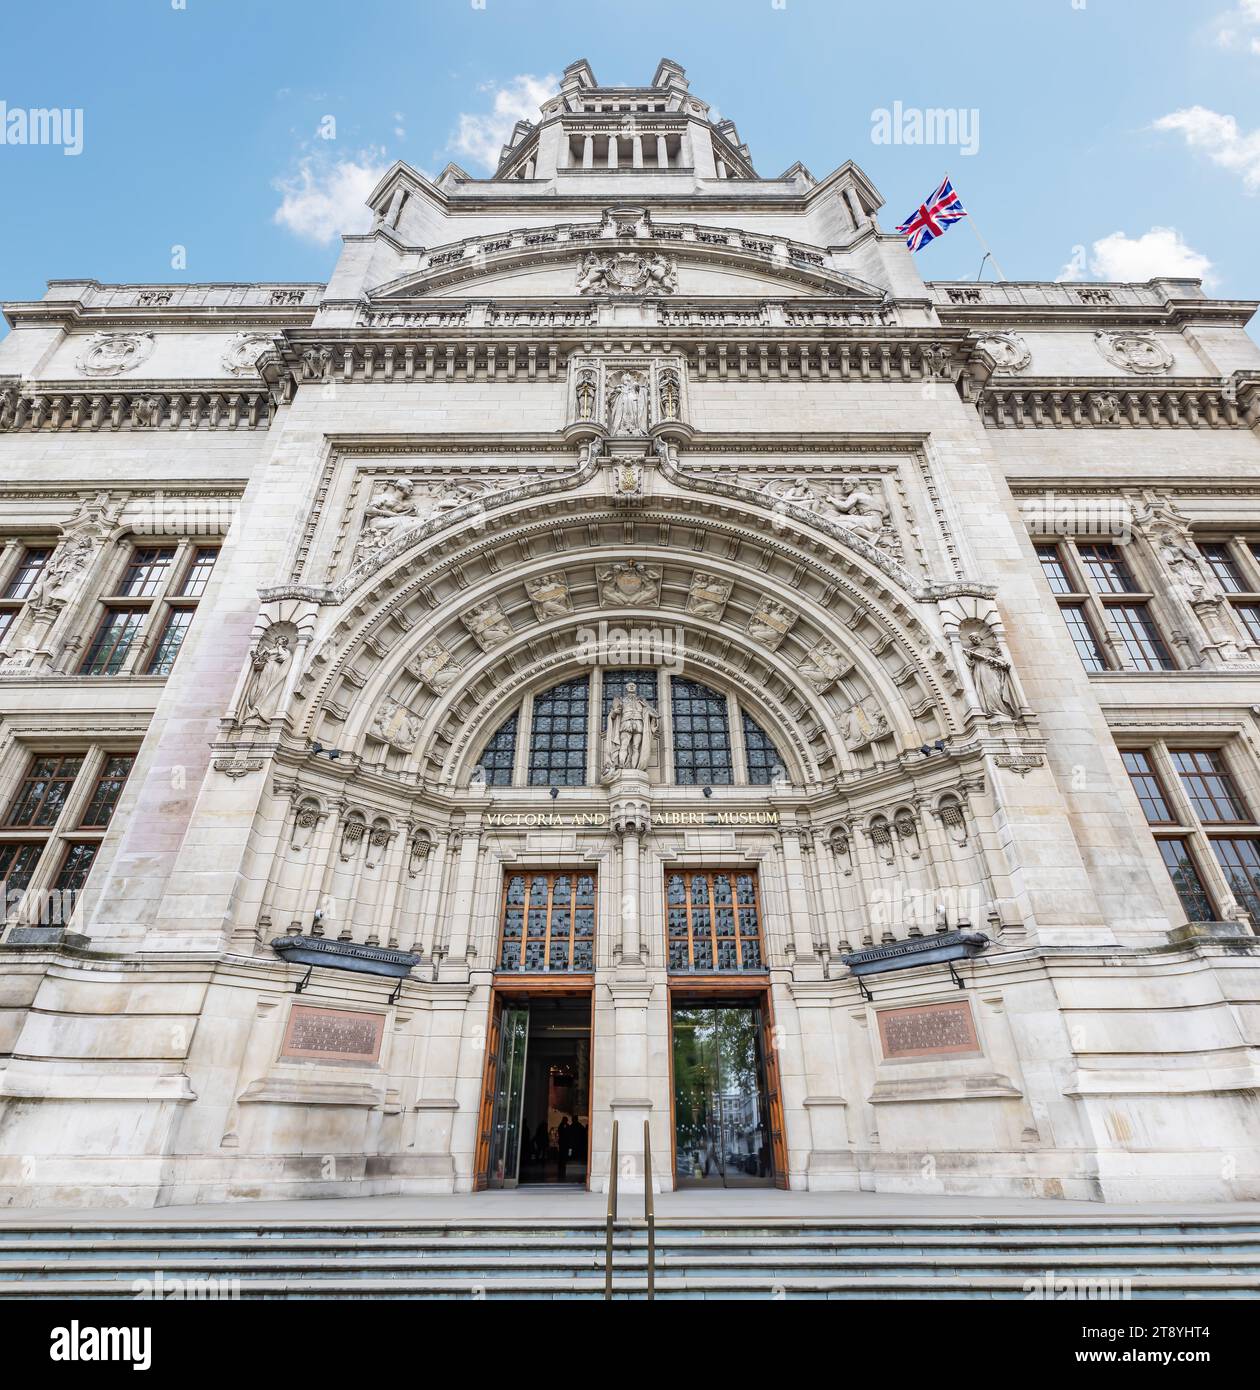 Facciata dell'ingresso principale del Victoria and Albert Museum di Londra, il più grande museo di arte applicata del mondo (arti decorative e design). Si chiama AFT Foto Stock